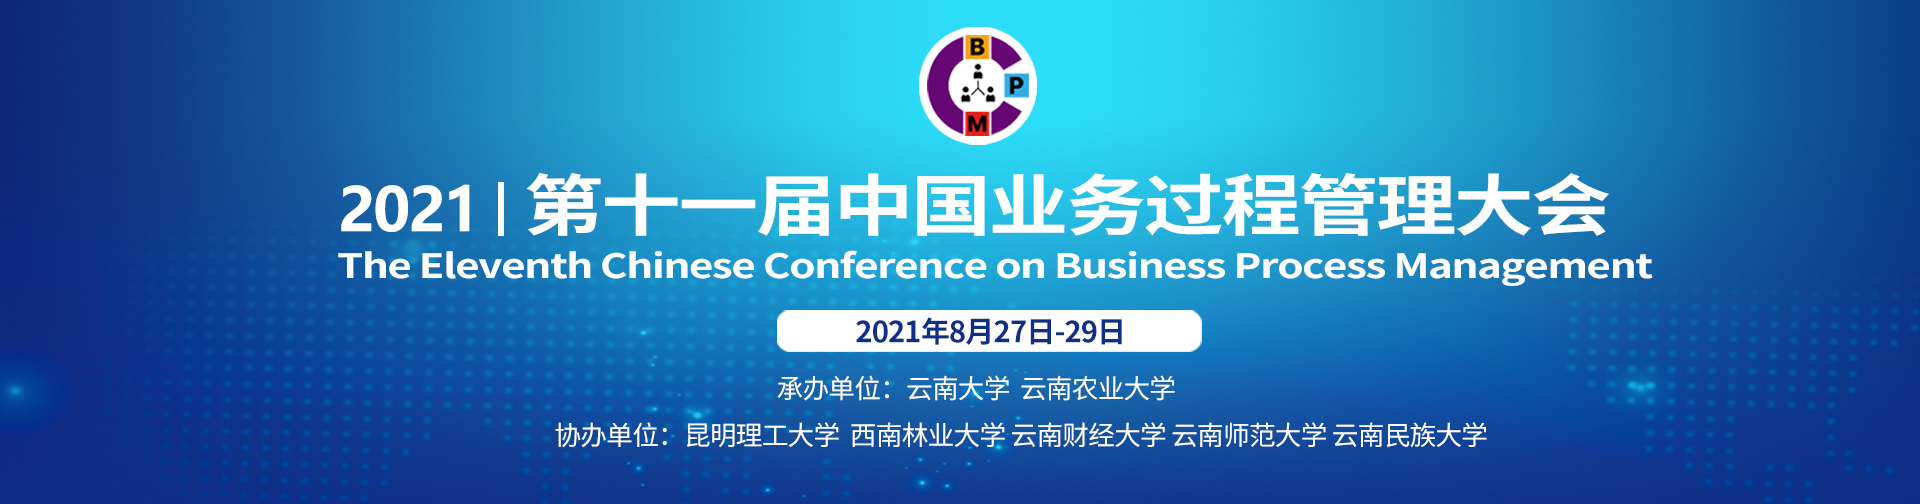 第十一届中国业务过程管理大会